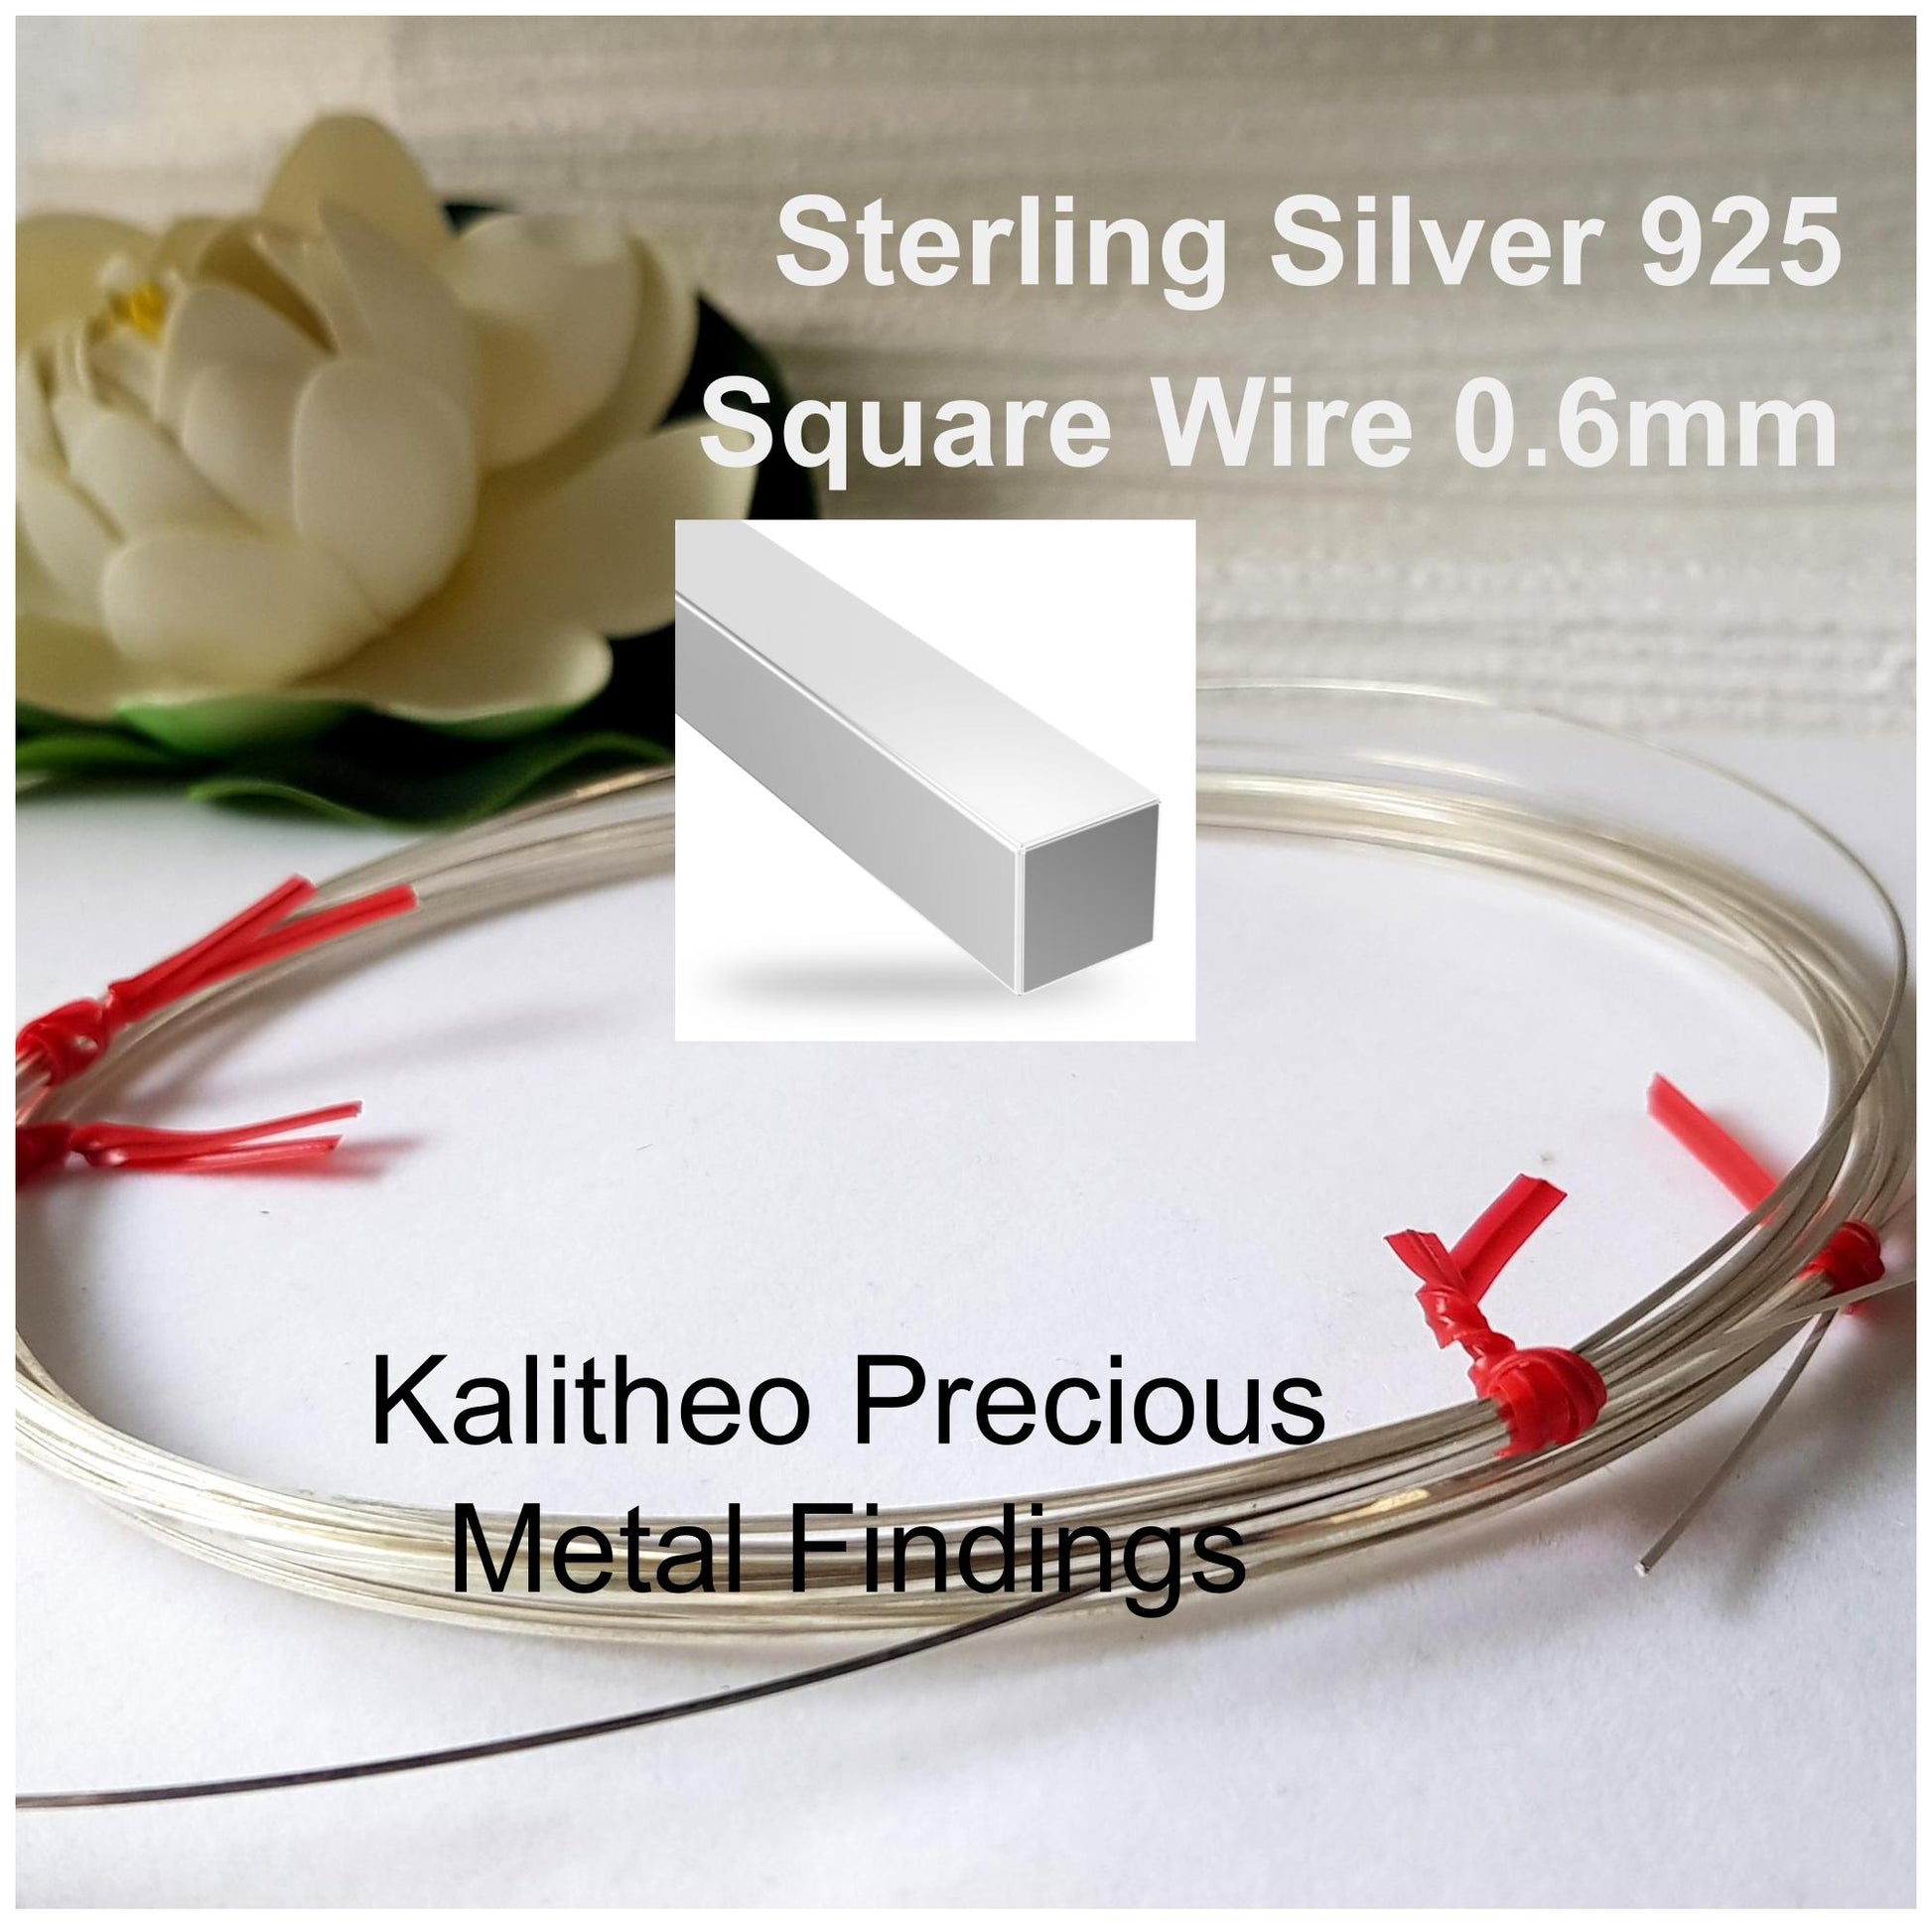 Medium Silver Solder Wire 22 gauge